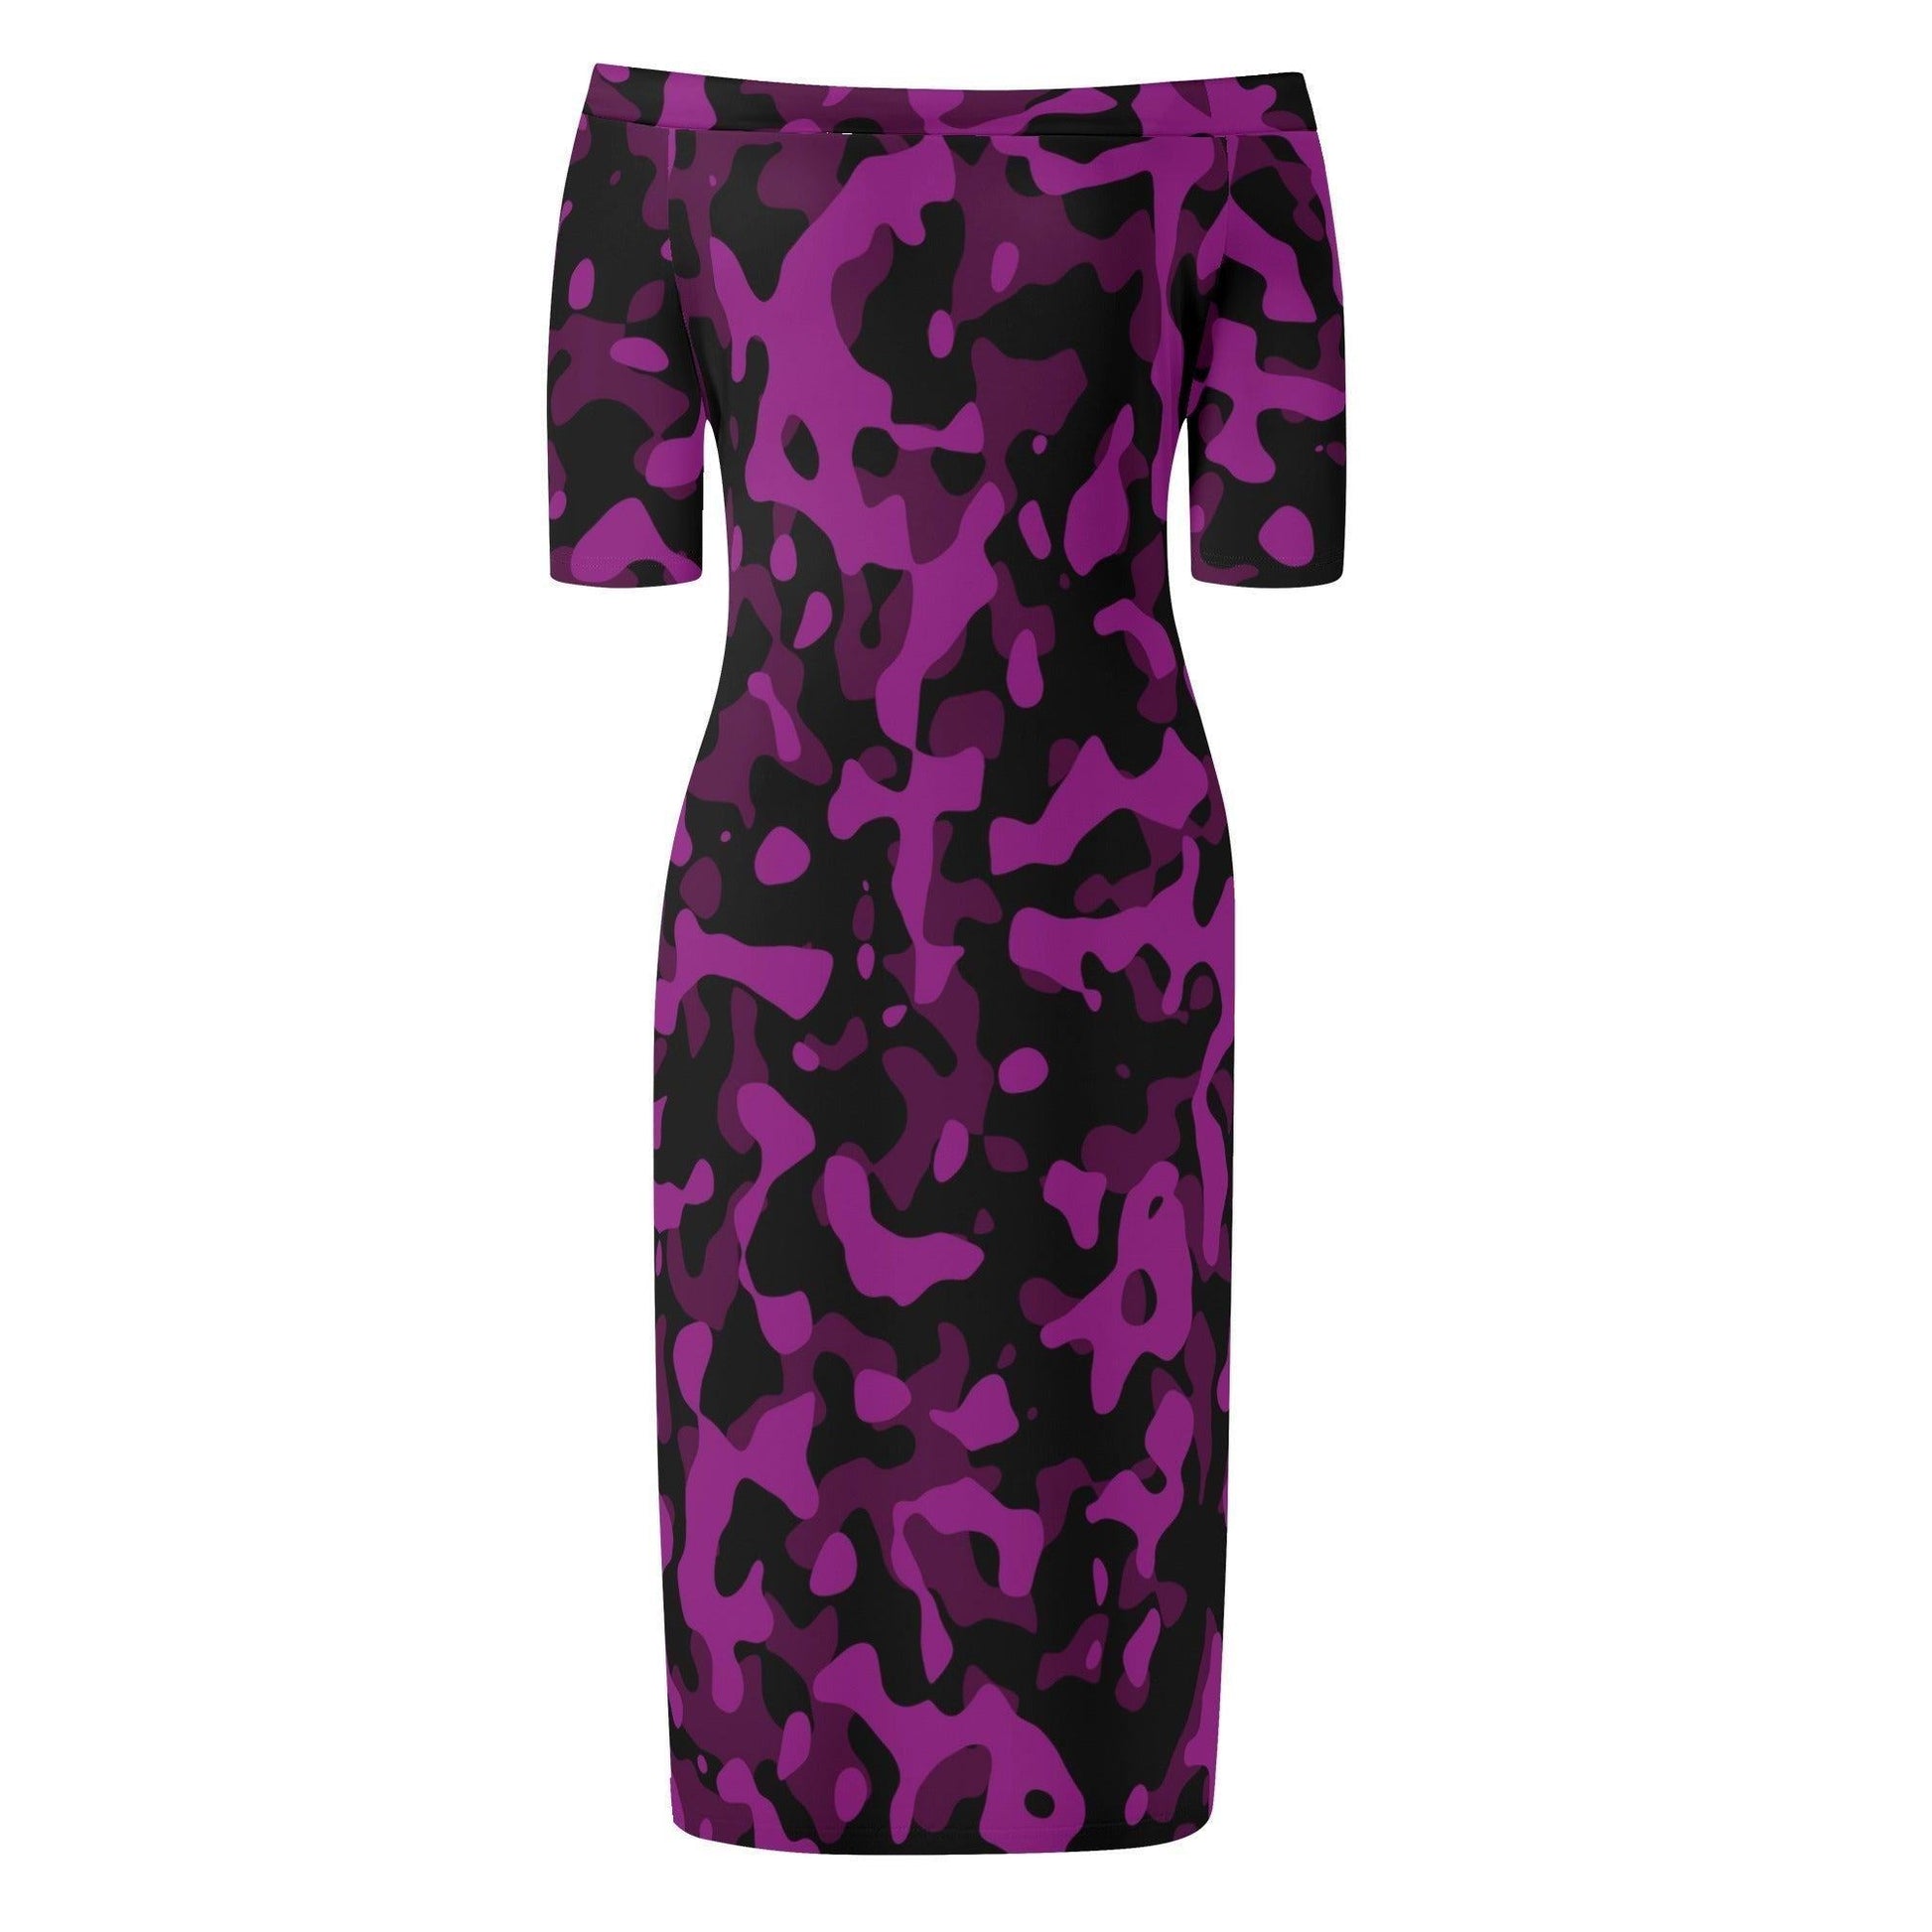 Black Violet Camouflage Off-Shoulder-Kleid -- Black Violet Camouflage Off-Shoulder-Kleid - undefined Off-Shoulder-Kleid | JLR Design